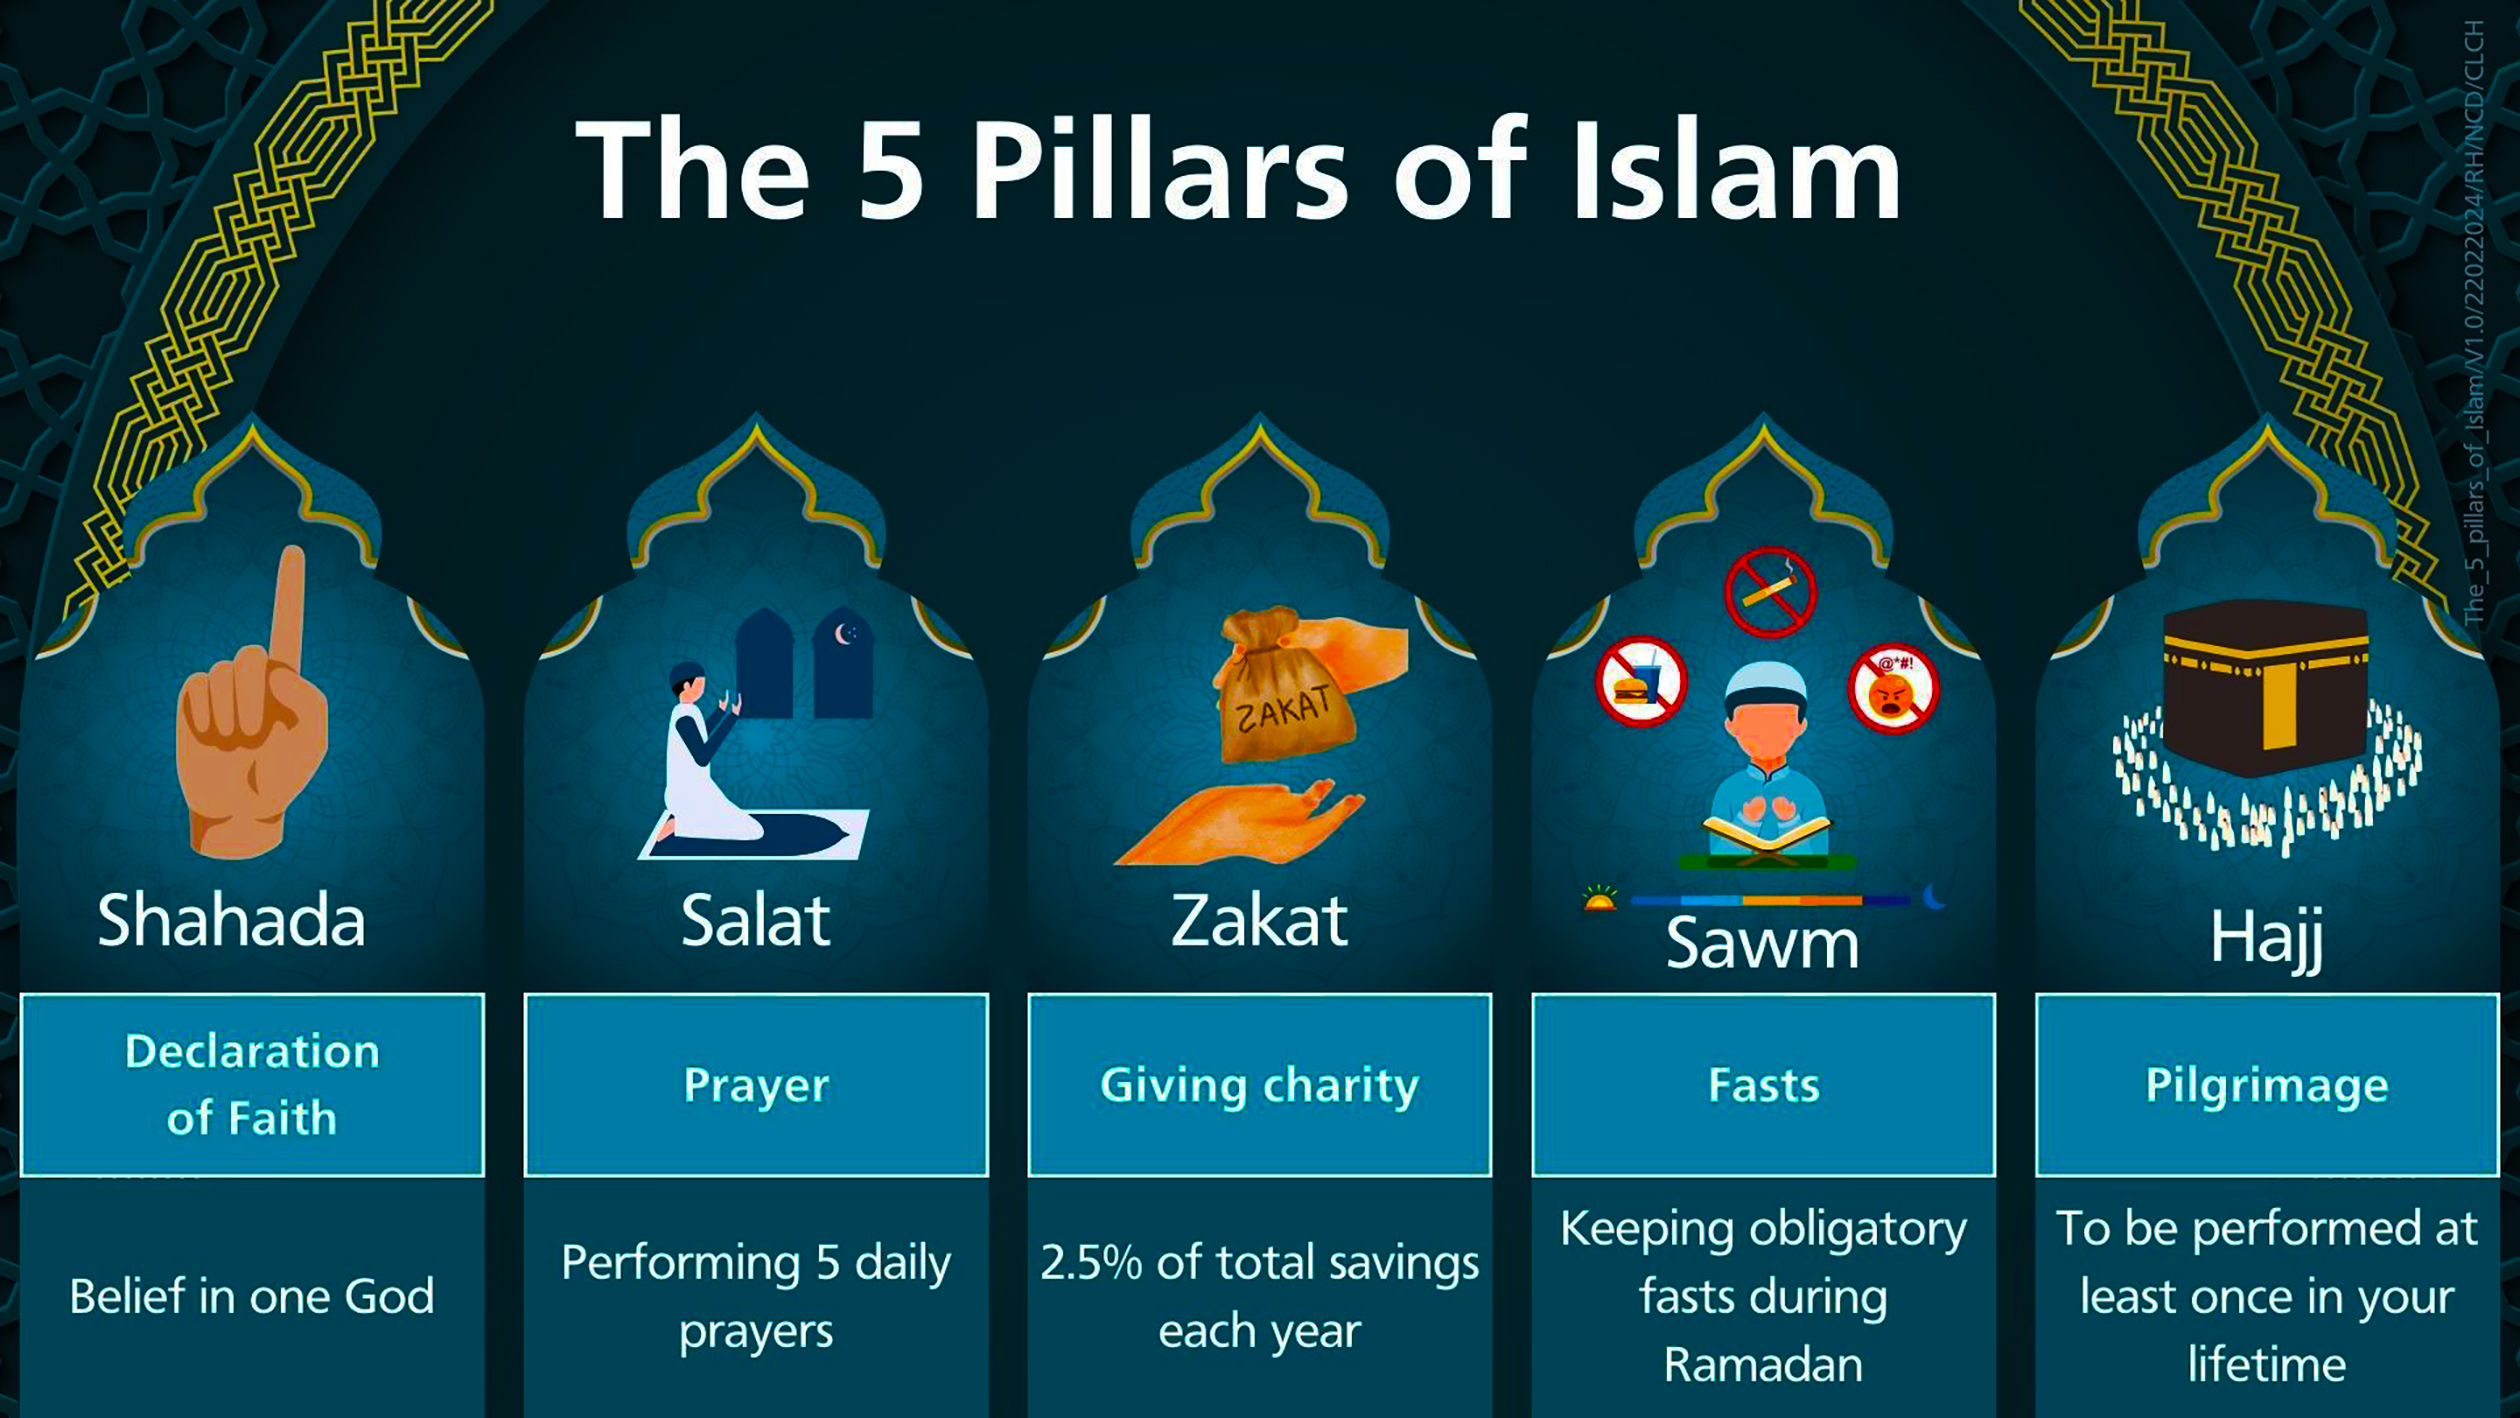 Ramadan beginnt! Wie Ramadan und Fasten in die fünf Säulen des Islam passen.